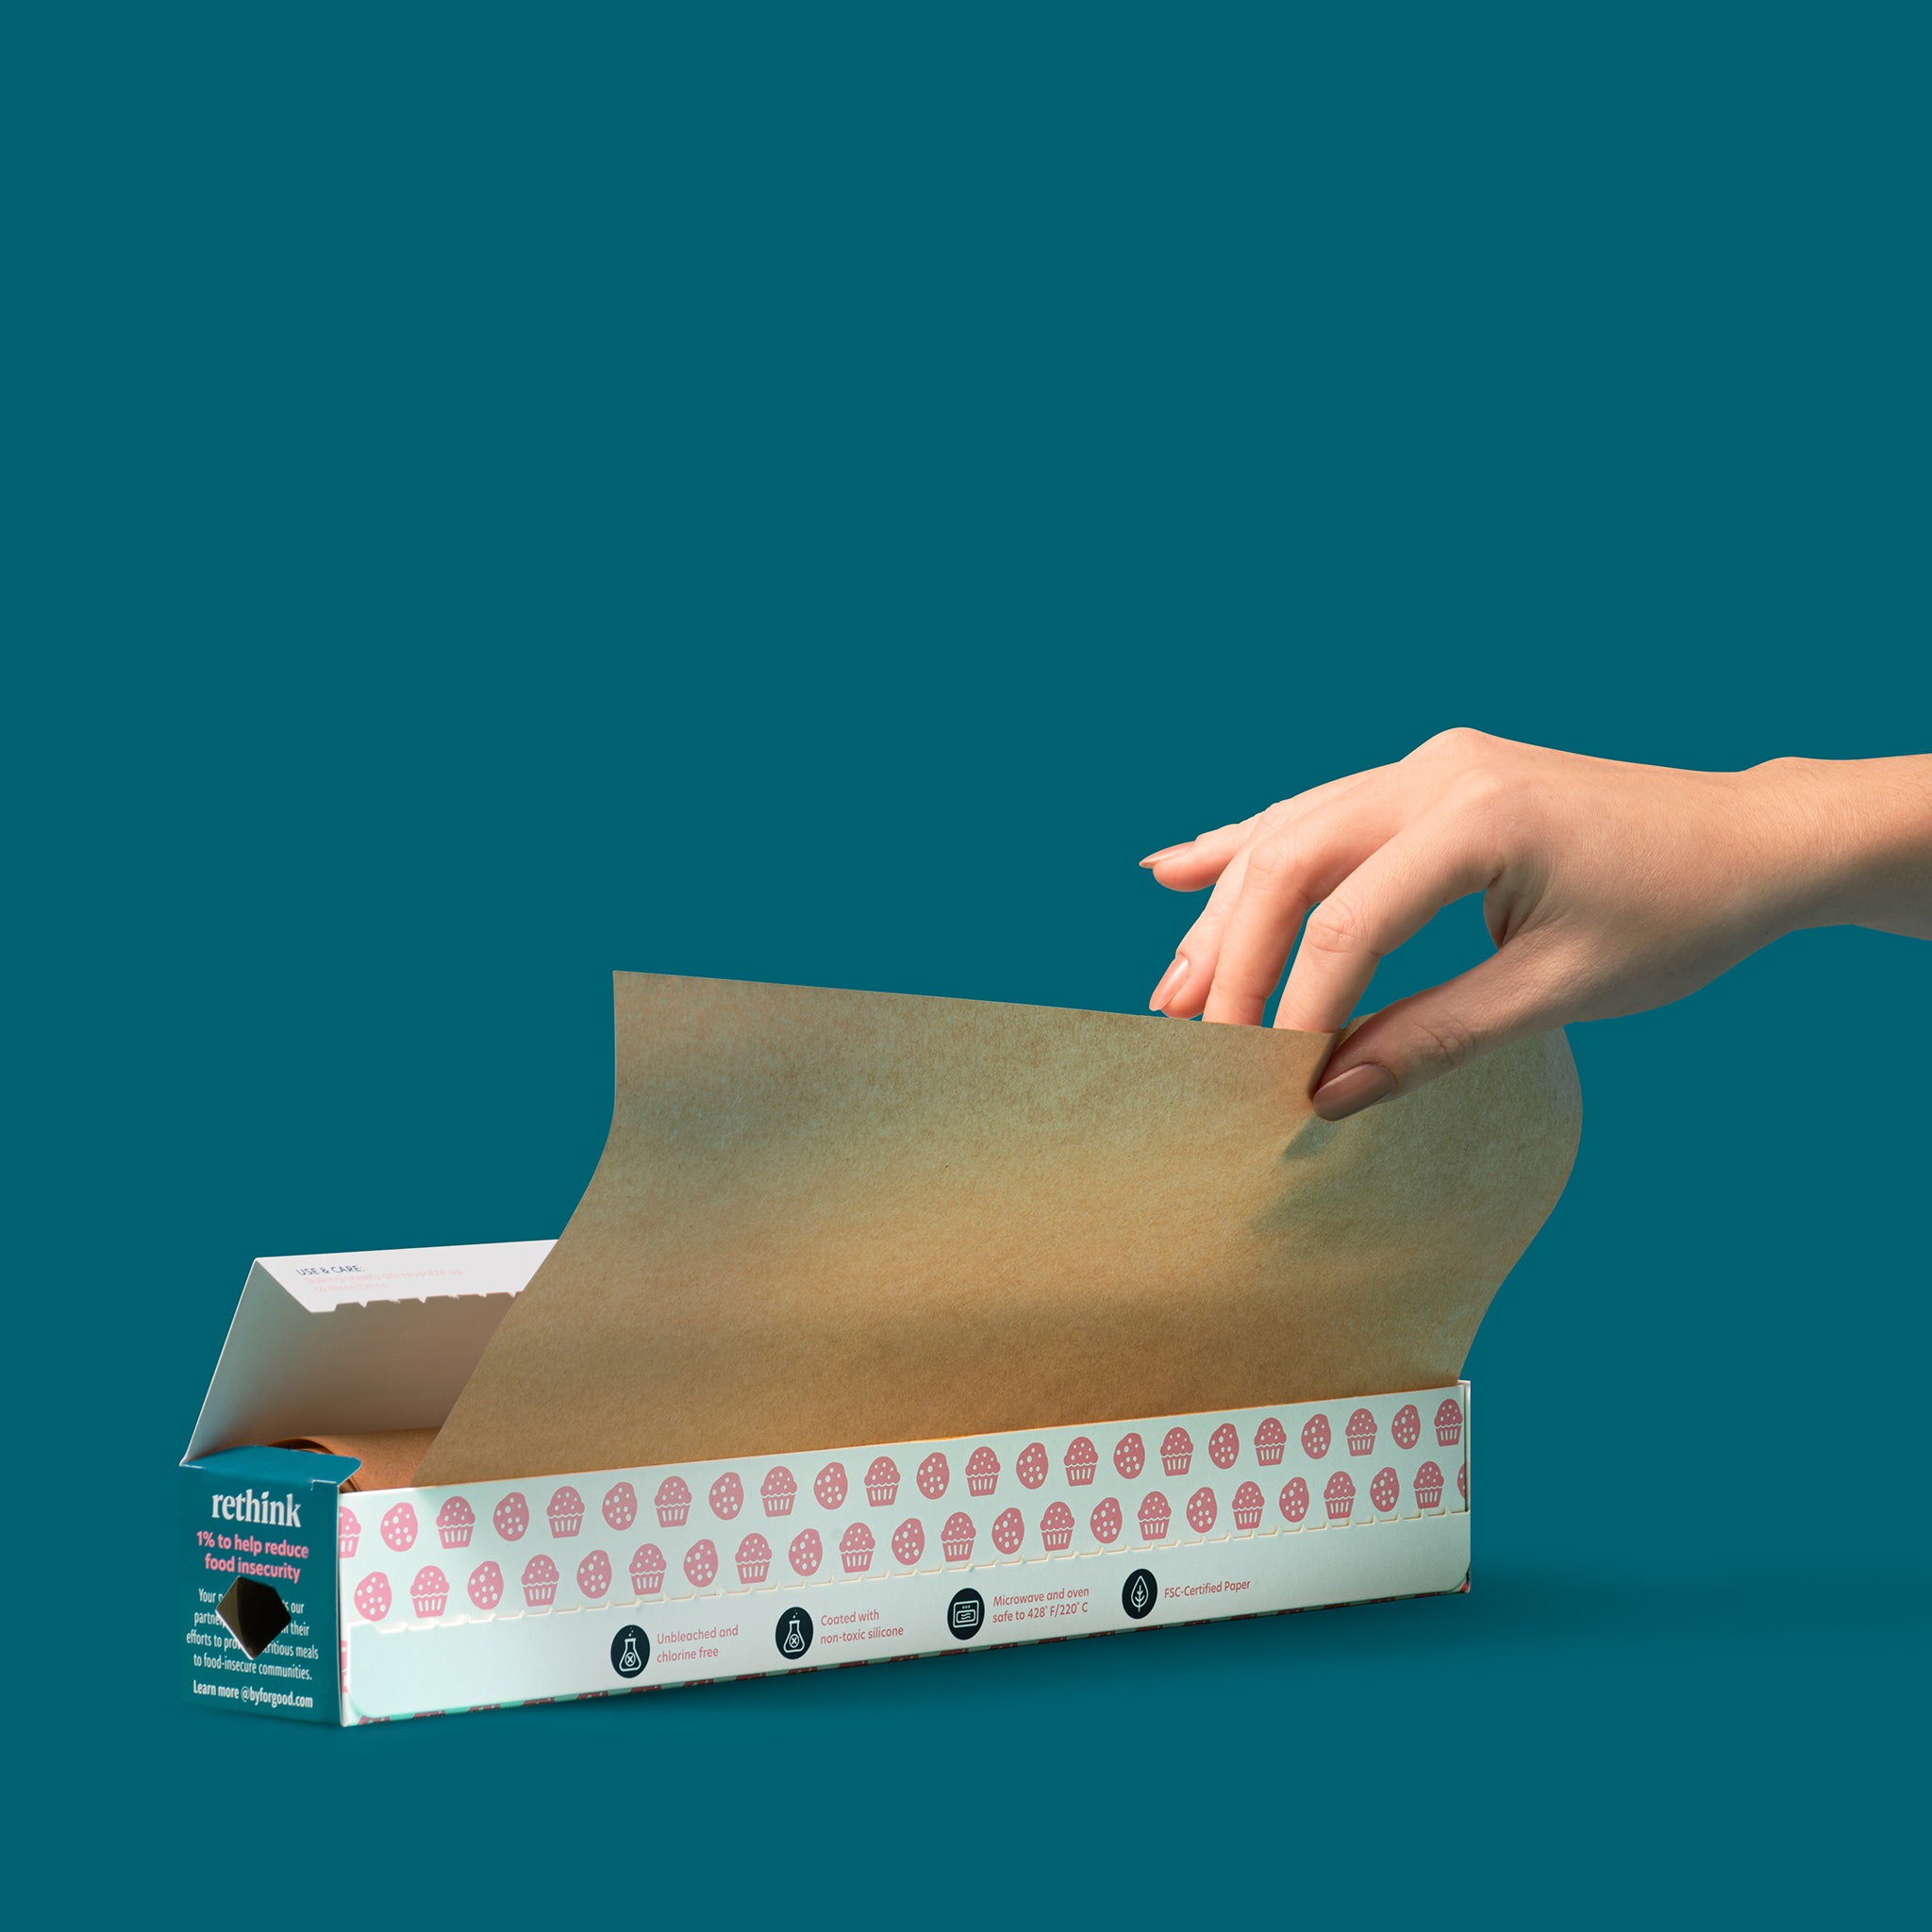 Compostable Parchment Paper Rolls